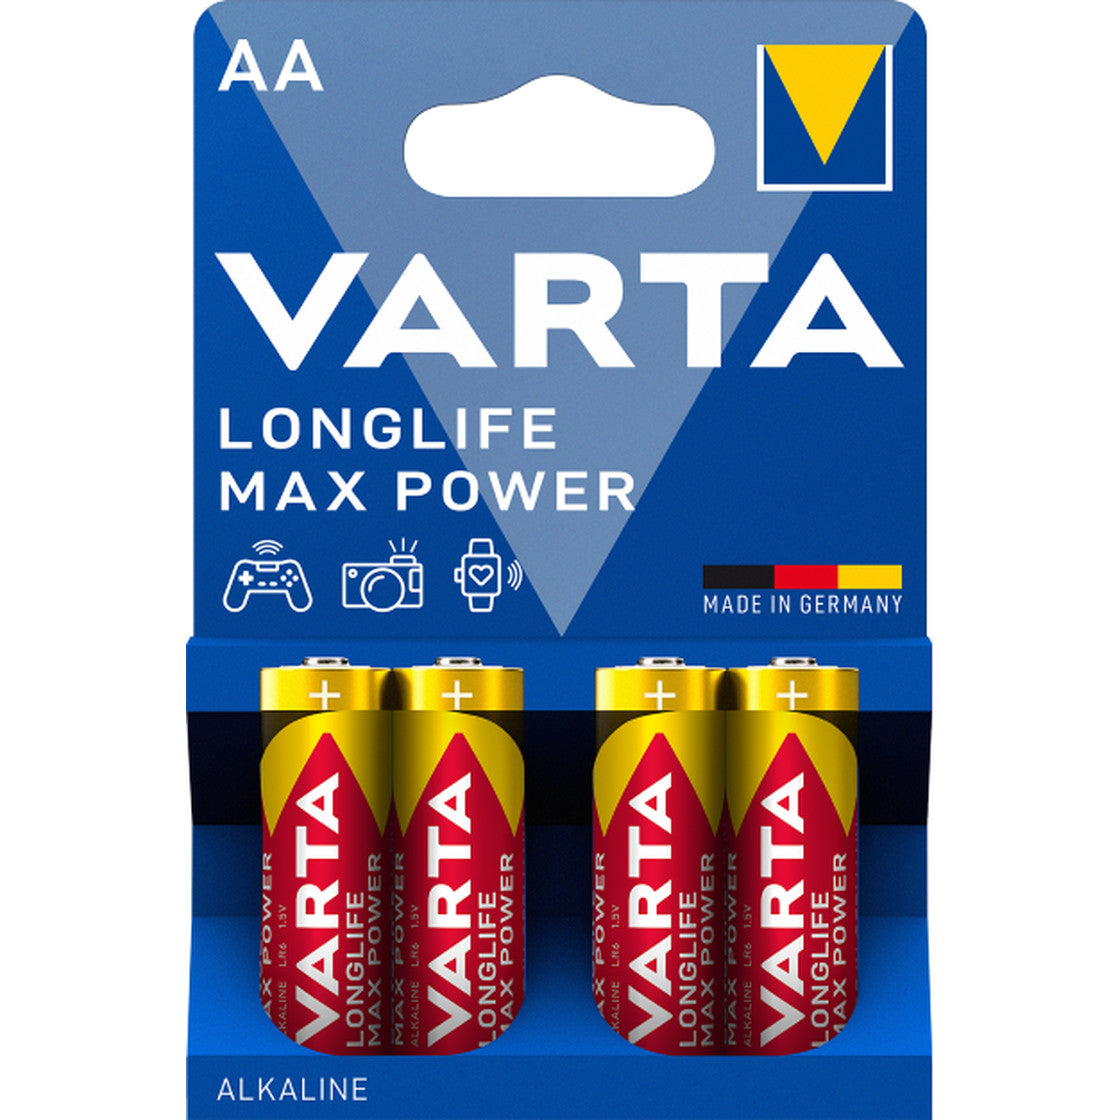 Varta Longlife Max Power 4703 - AAA X4